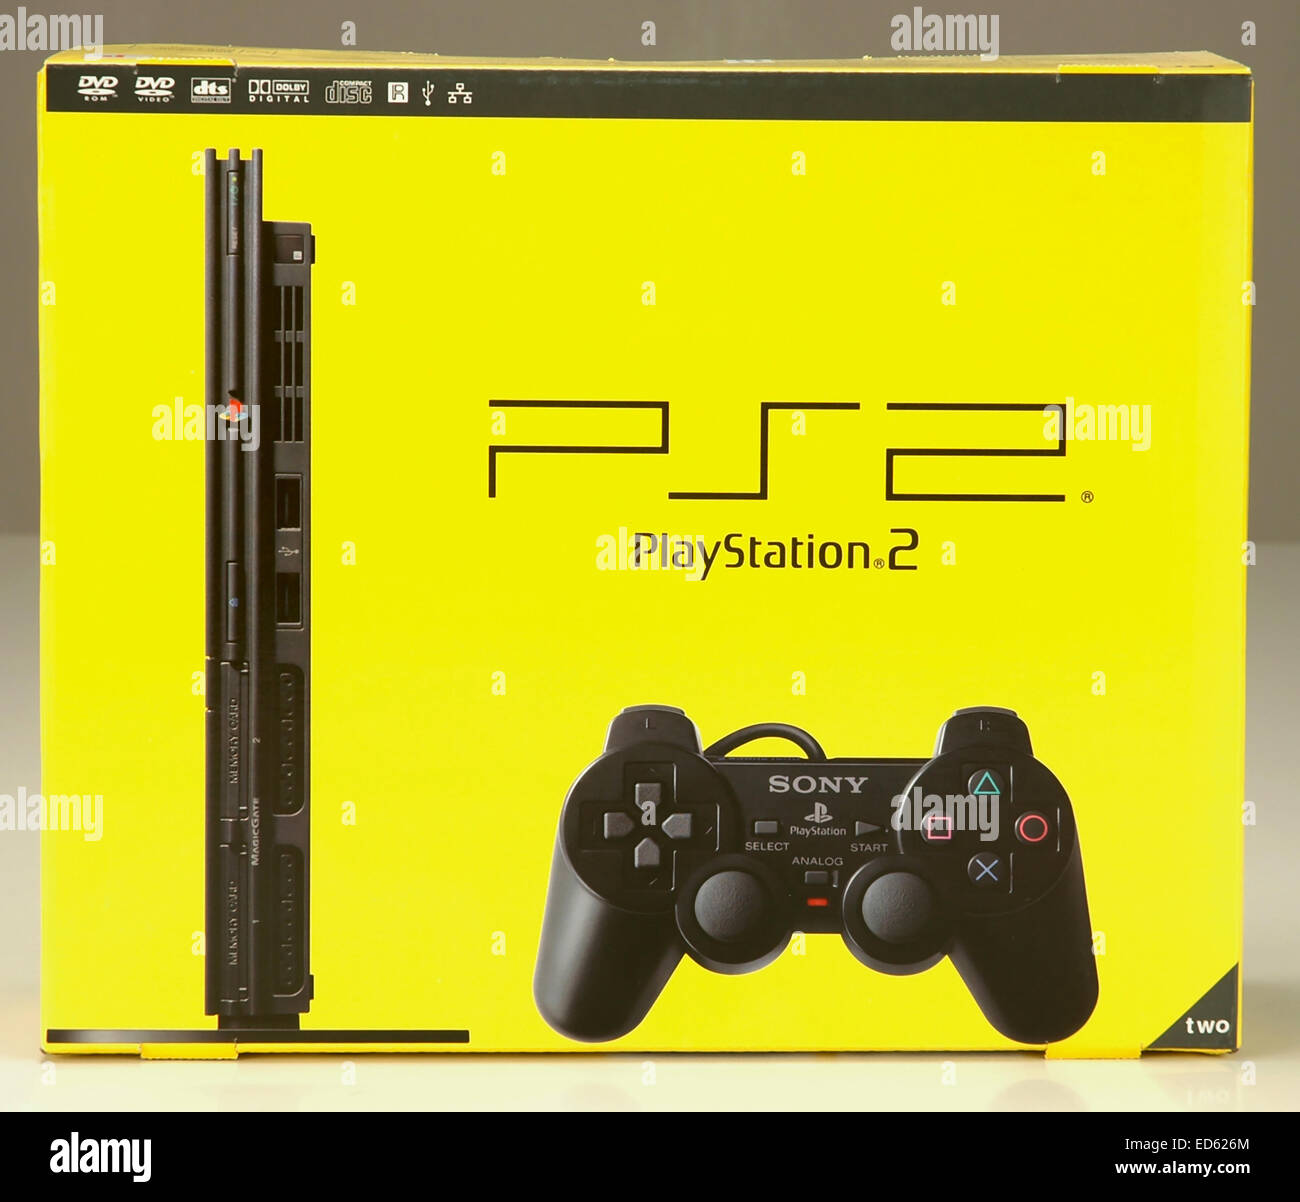 Sony Playstation 2 box Stock Photo